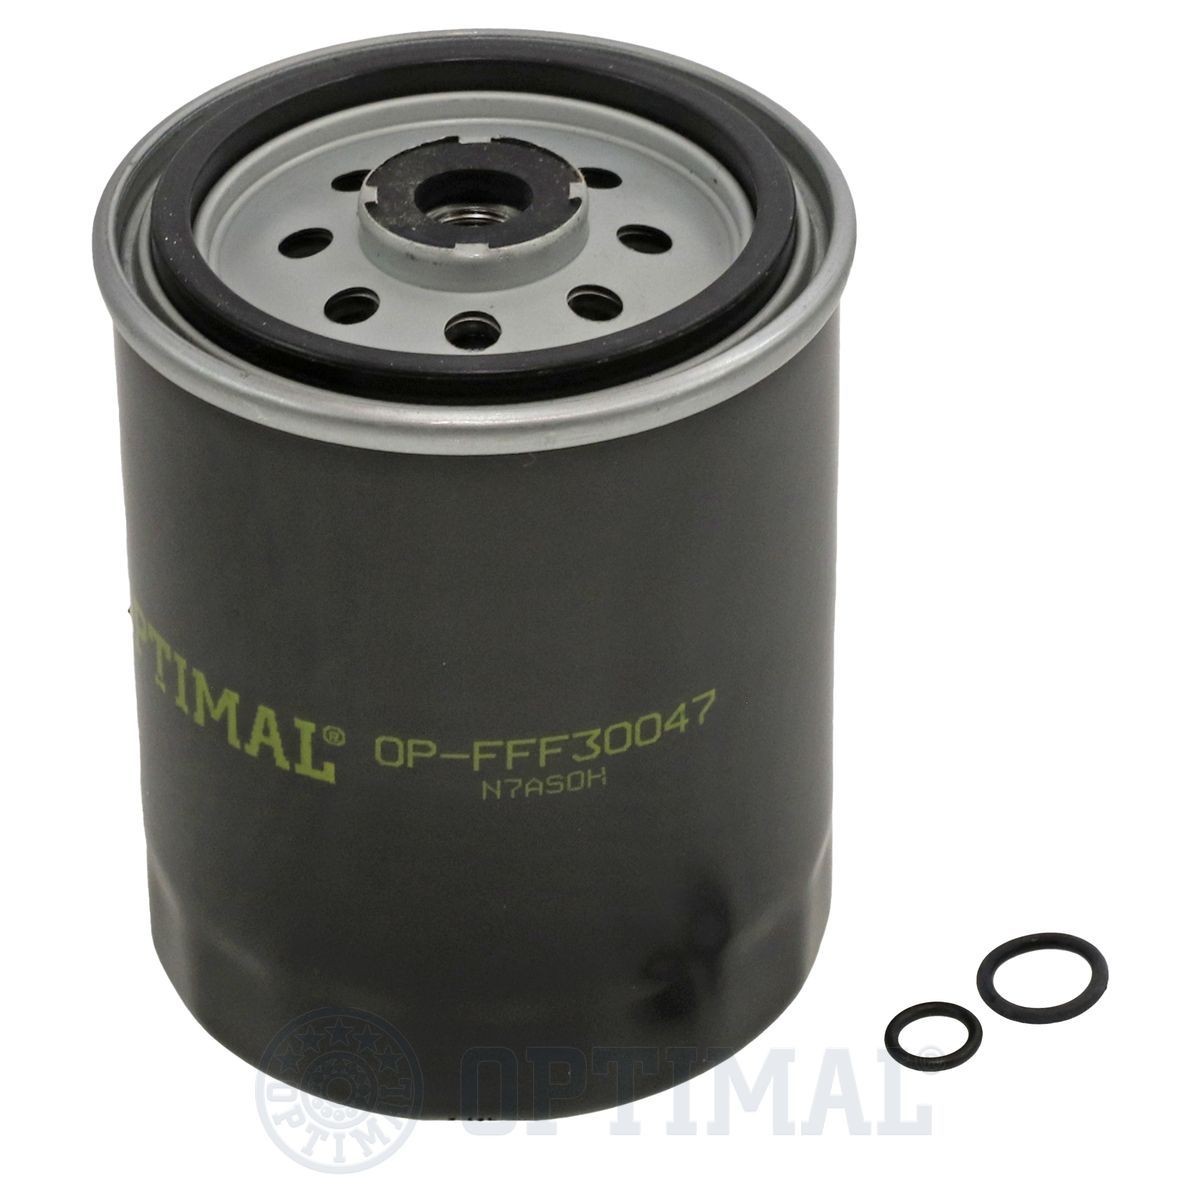 OPTIMAL OP-FFF30047 Fuel filter 601 090 1652